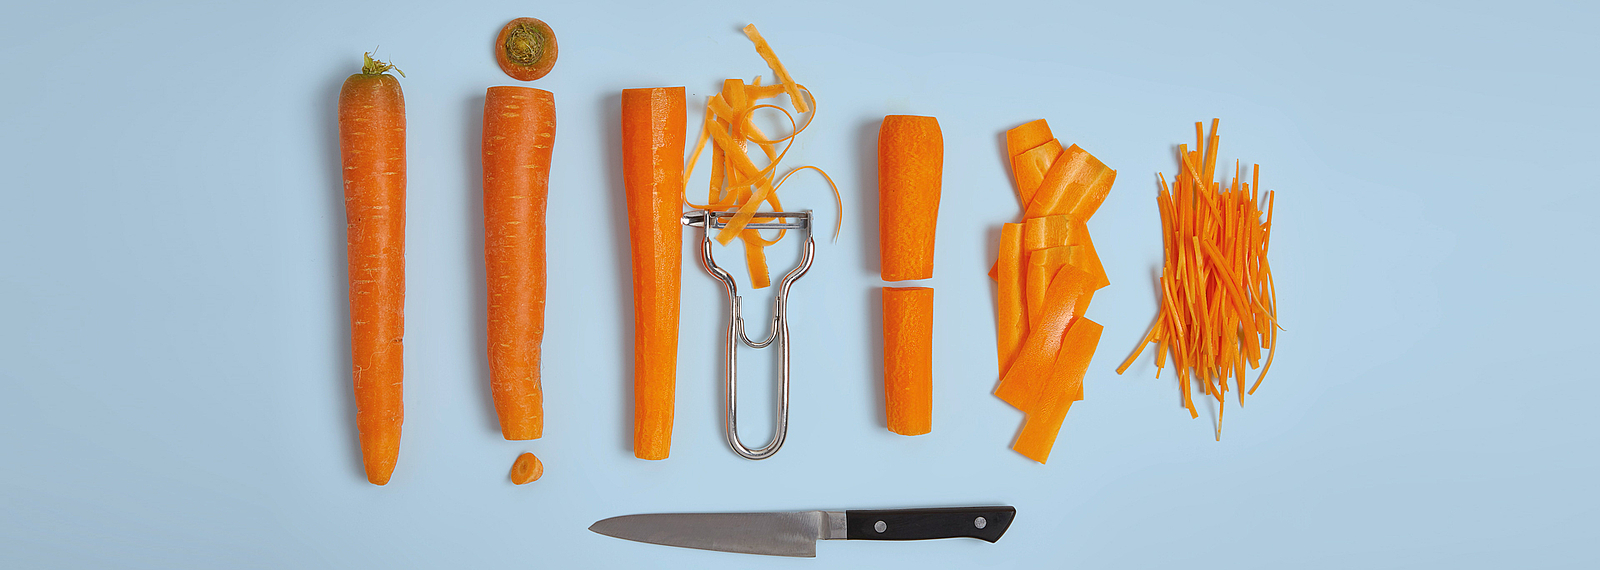 Entstehung von Karotte zu Karottenstreifen